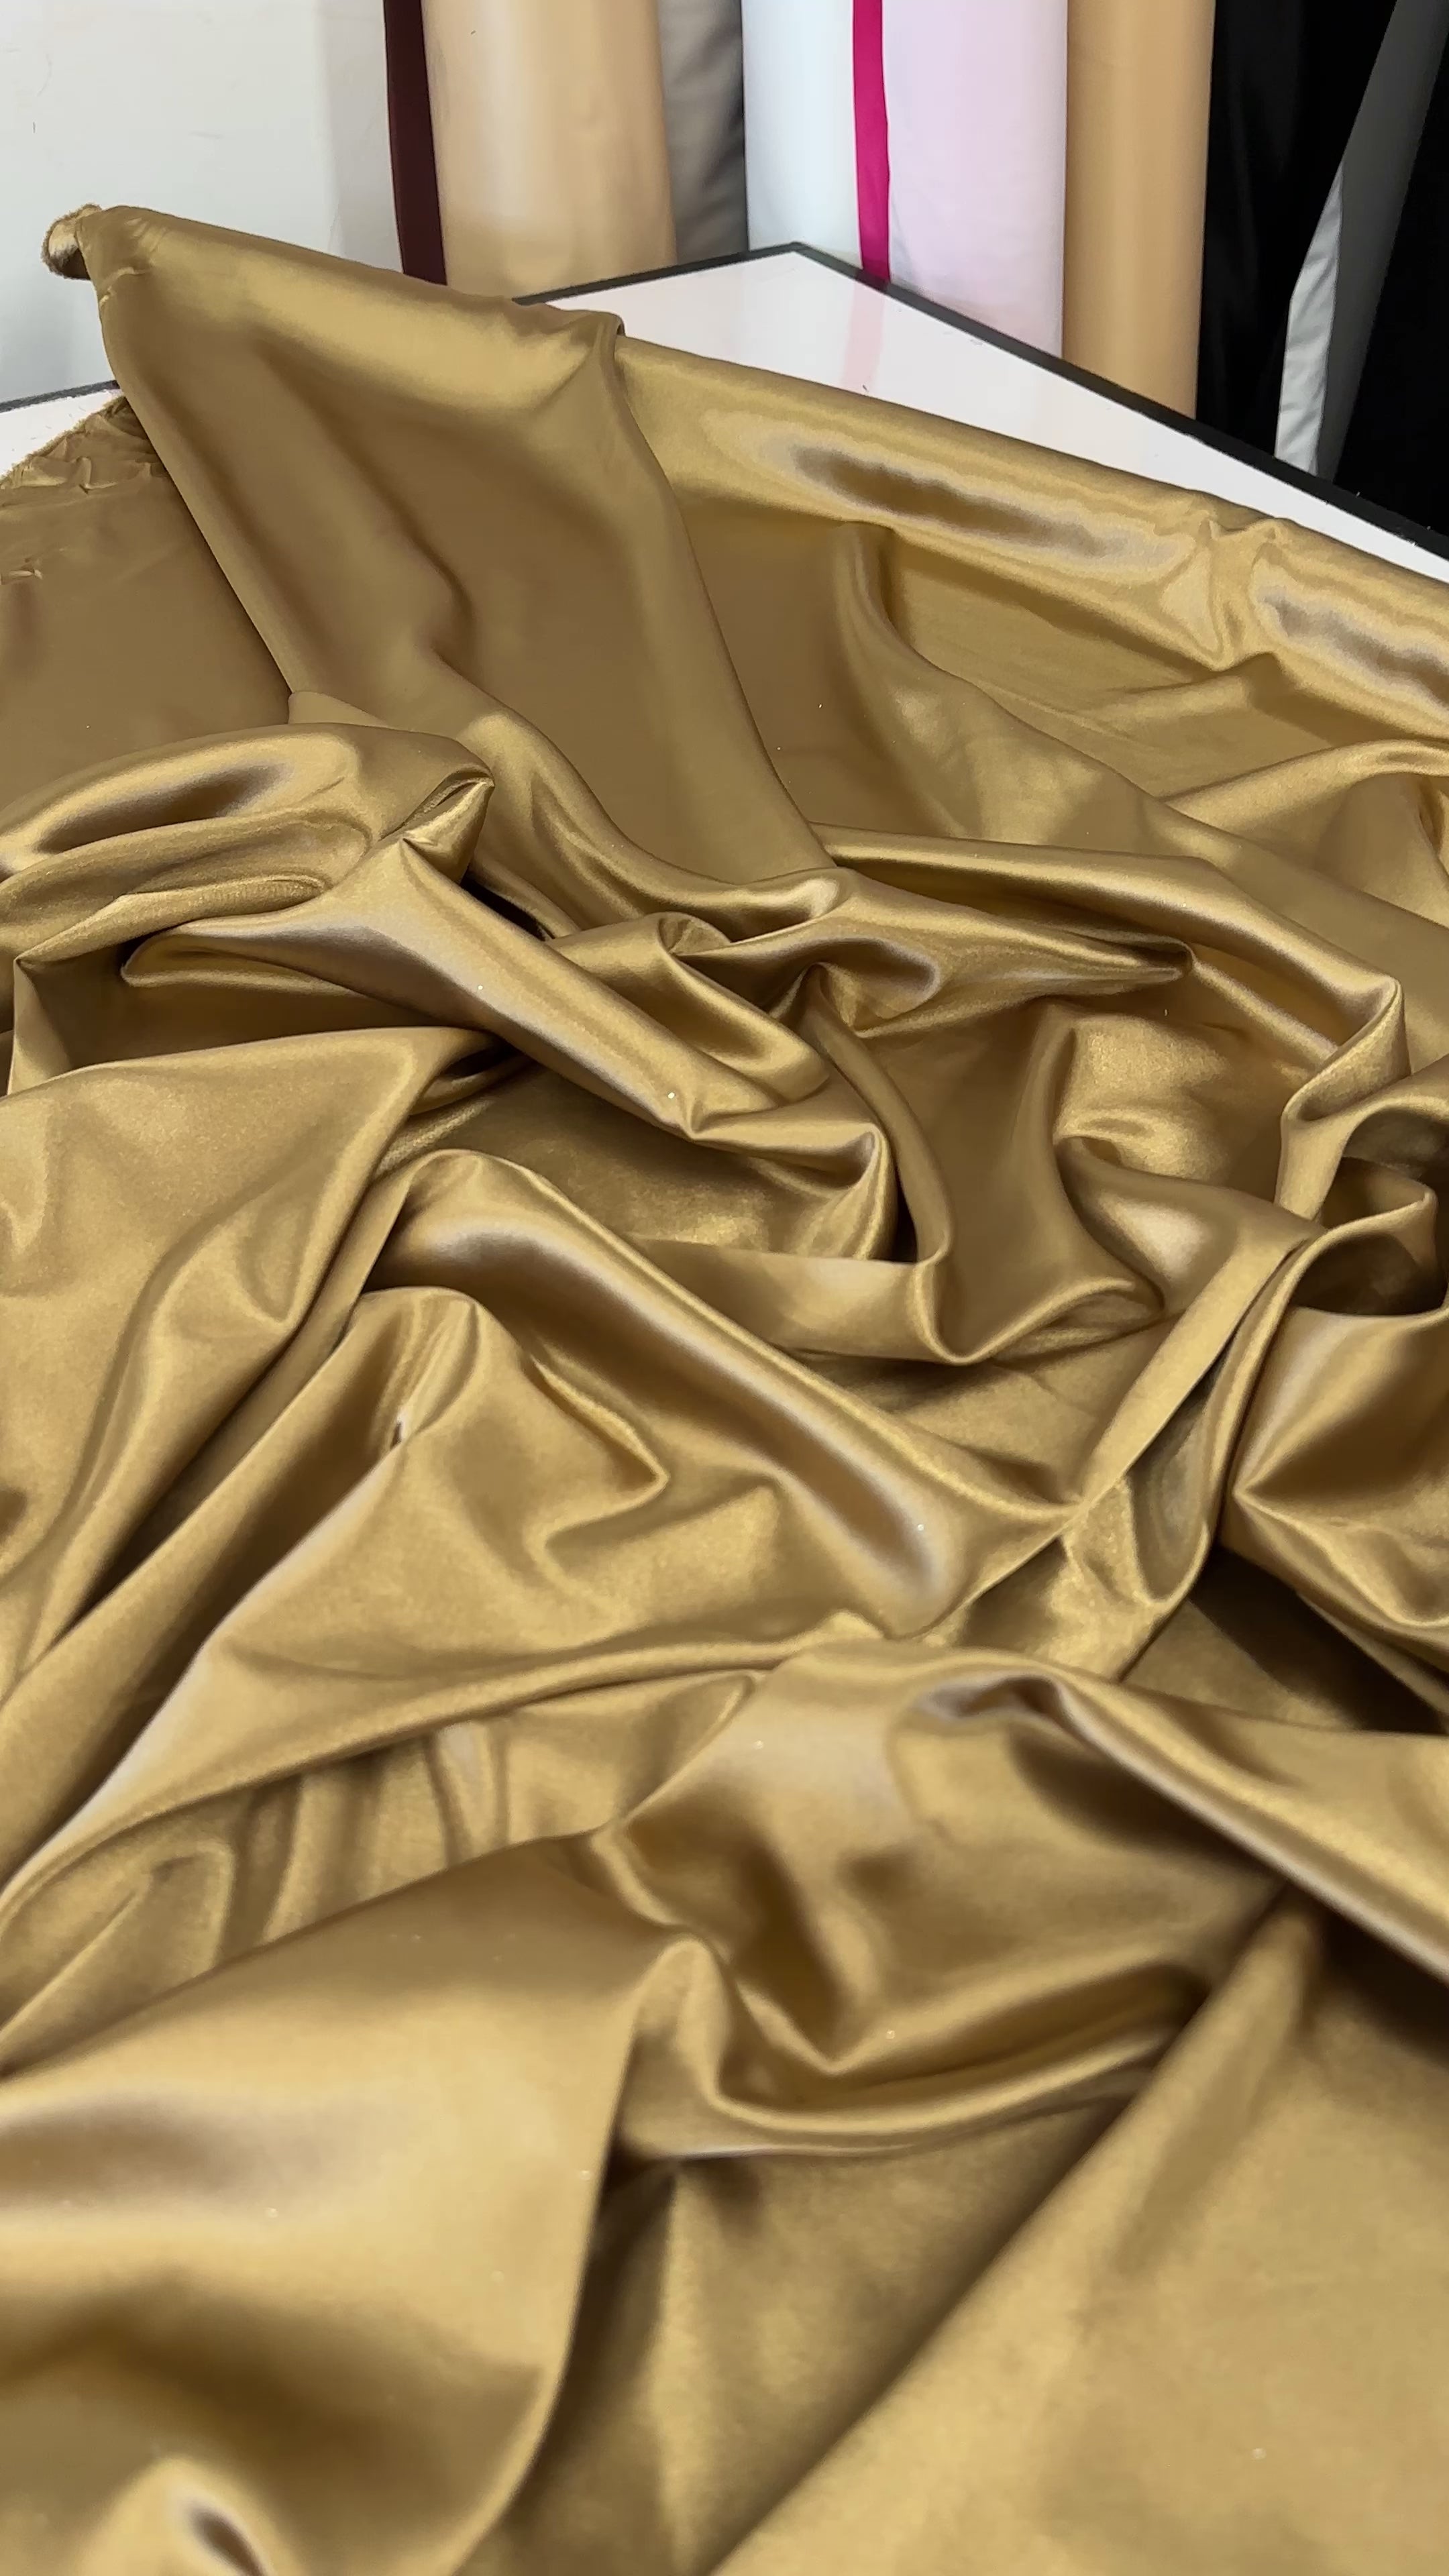 Shop now Gold Champagne Silky Stretch Satin by Yard- Kiki Textiles –  KikiTextiles